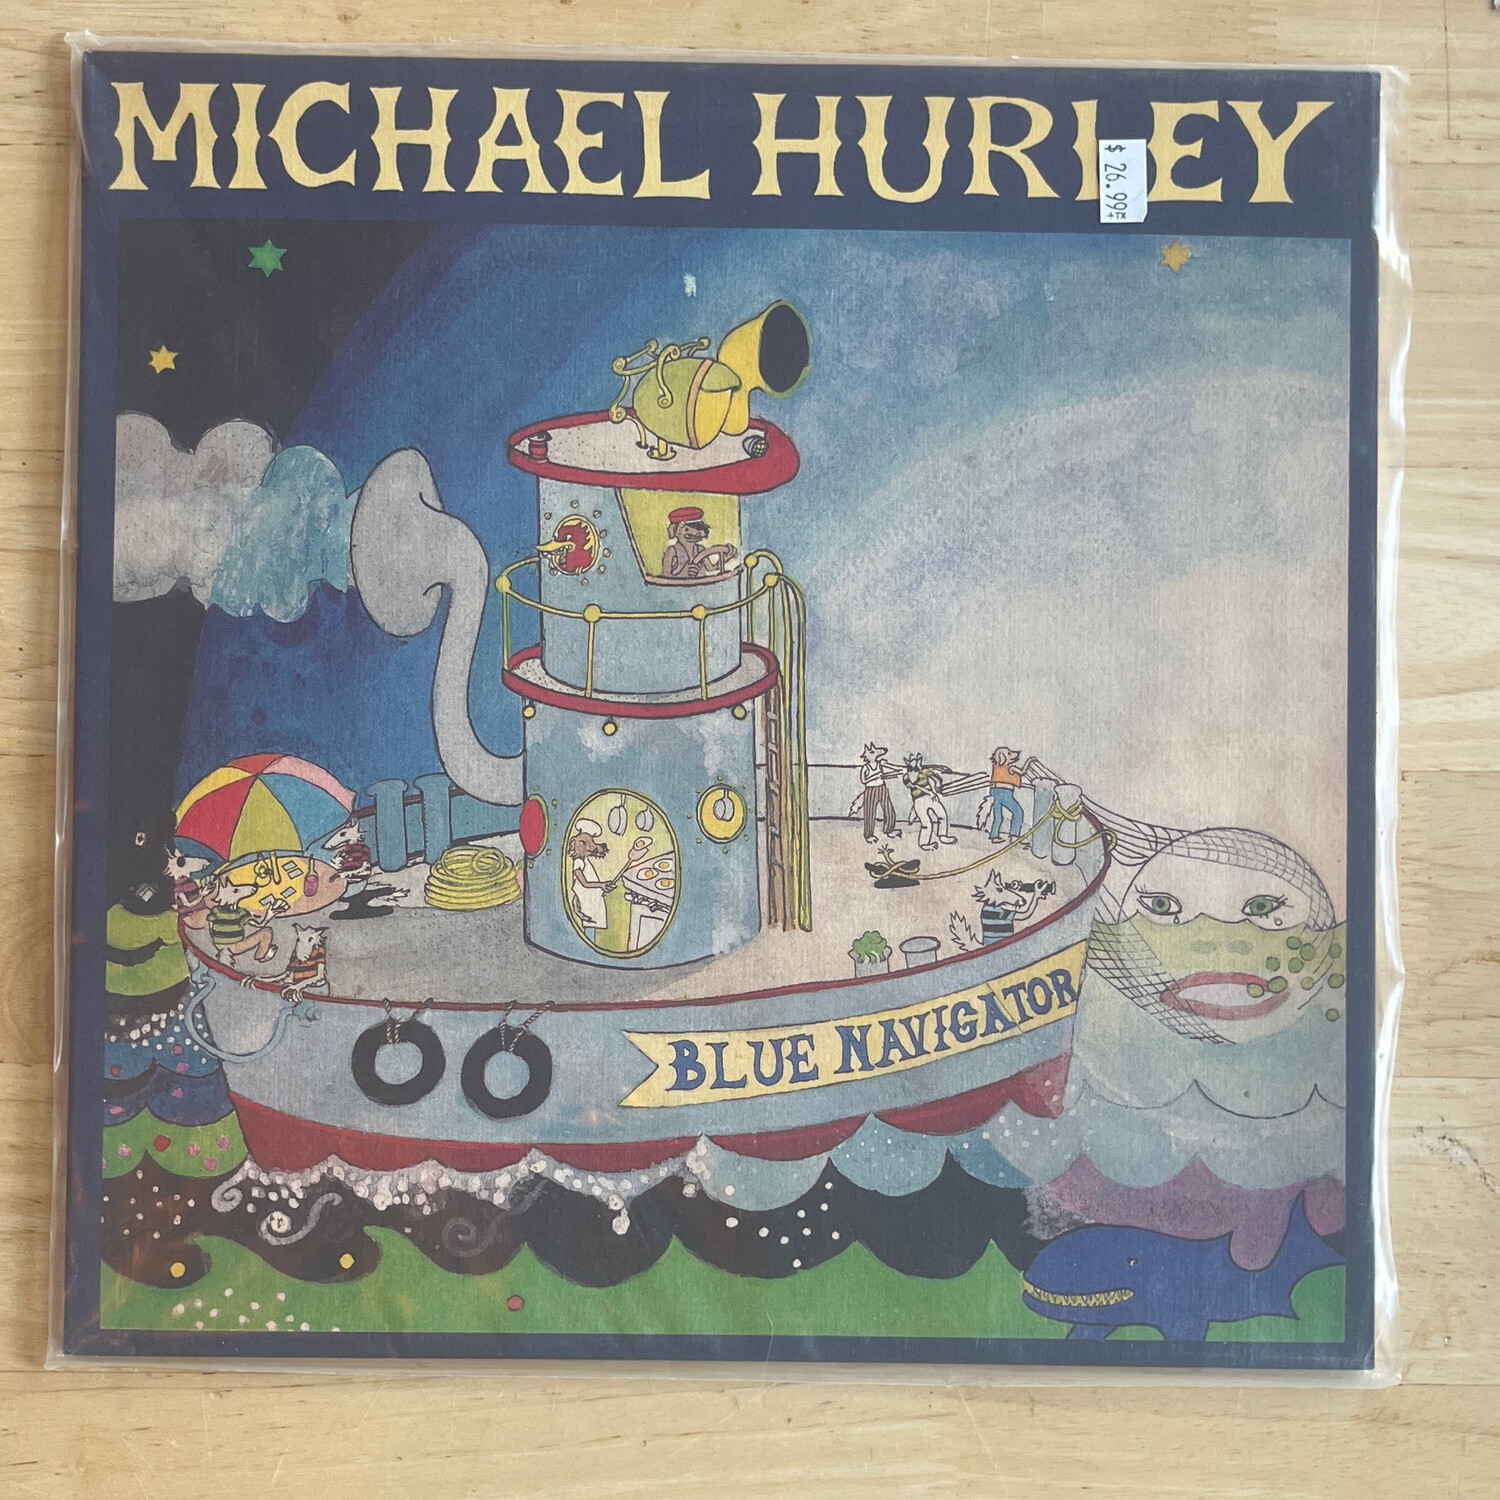 Michael Hurley "Blue Navigator" LP (Feeding Tube reissue)